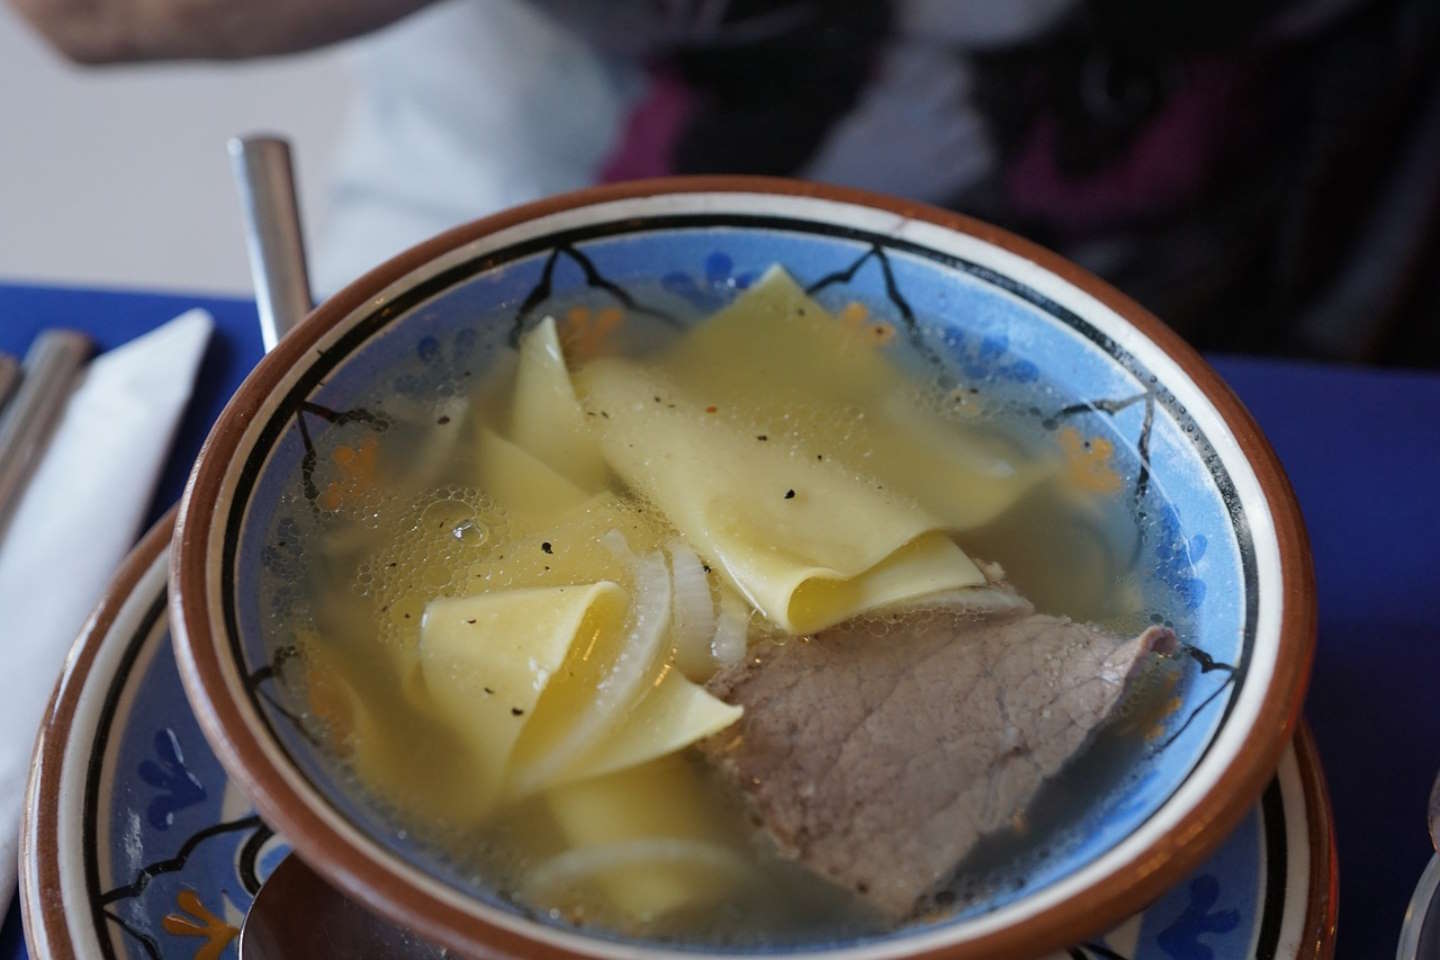 Новости Казахстана / Общество в Казахстане / Иностранные туристы назвали самые популярные казахские блюда